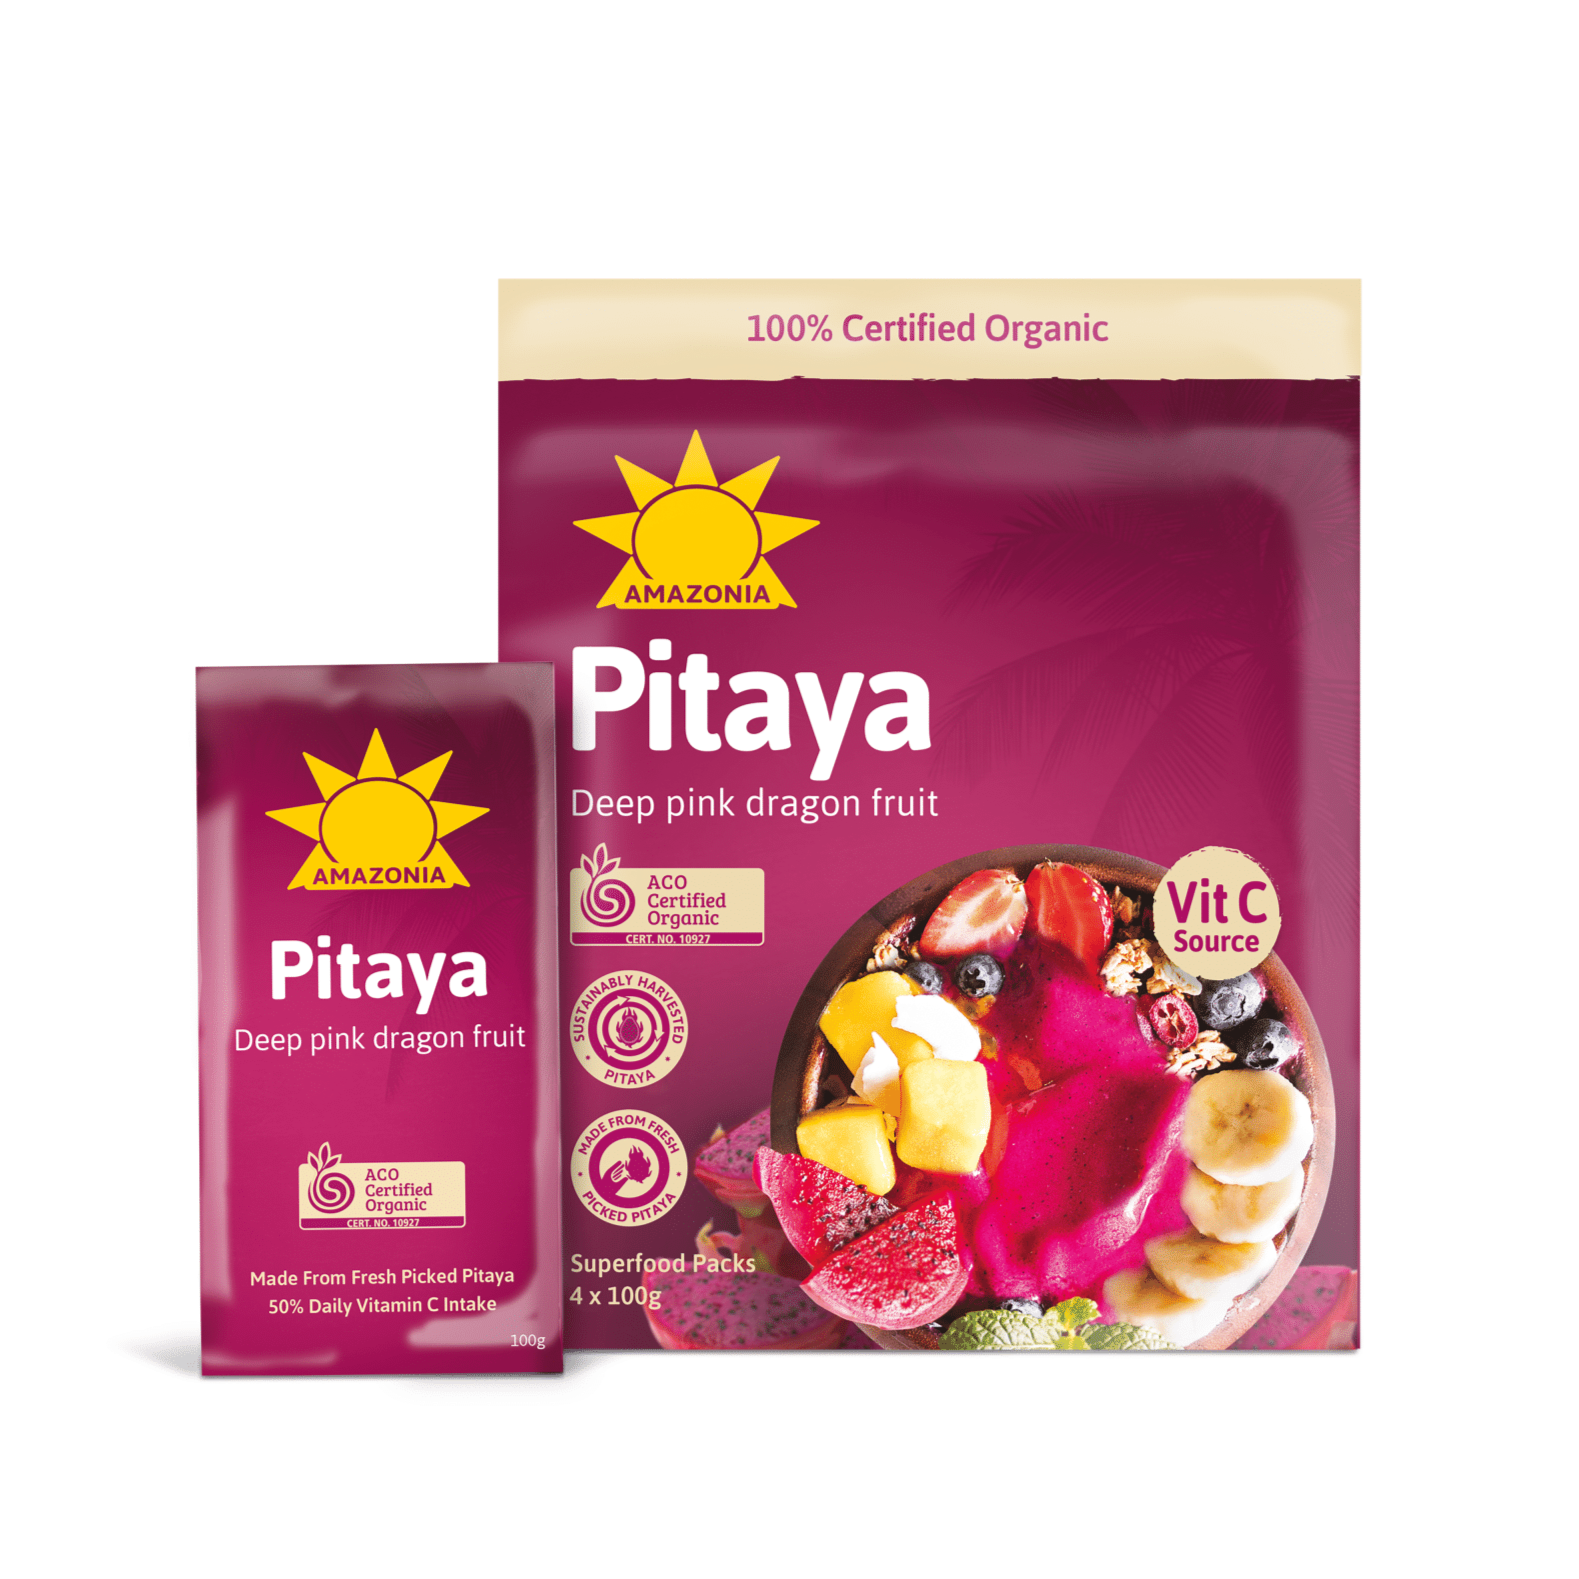 AMAZONIA Organic Deep Pink Dragon Fruit Pitaya Puree, 4Kg - Pack of 40